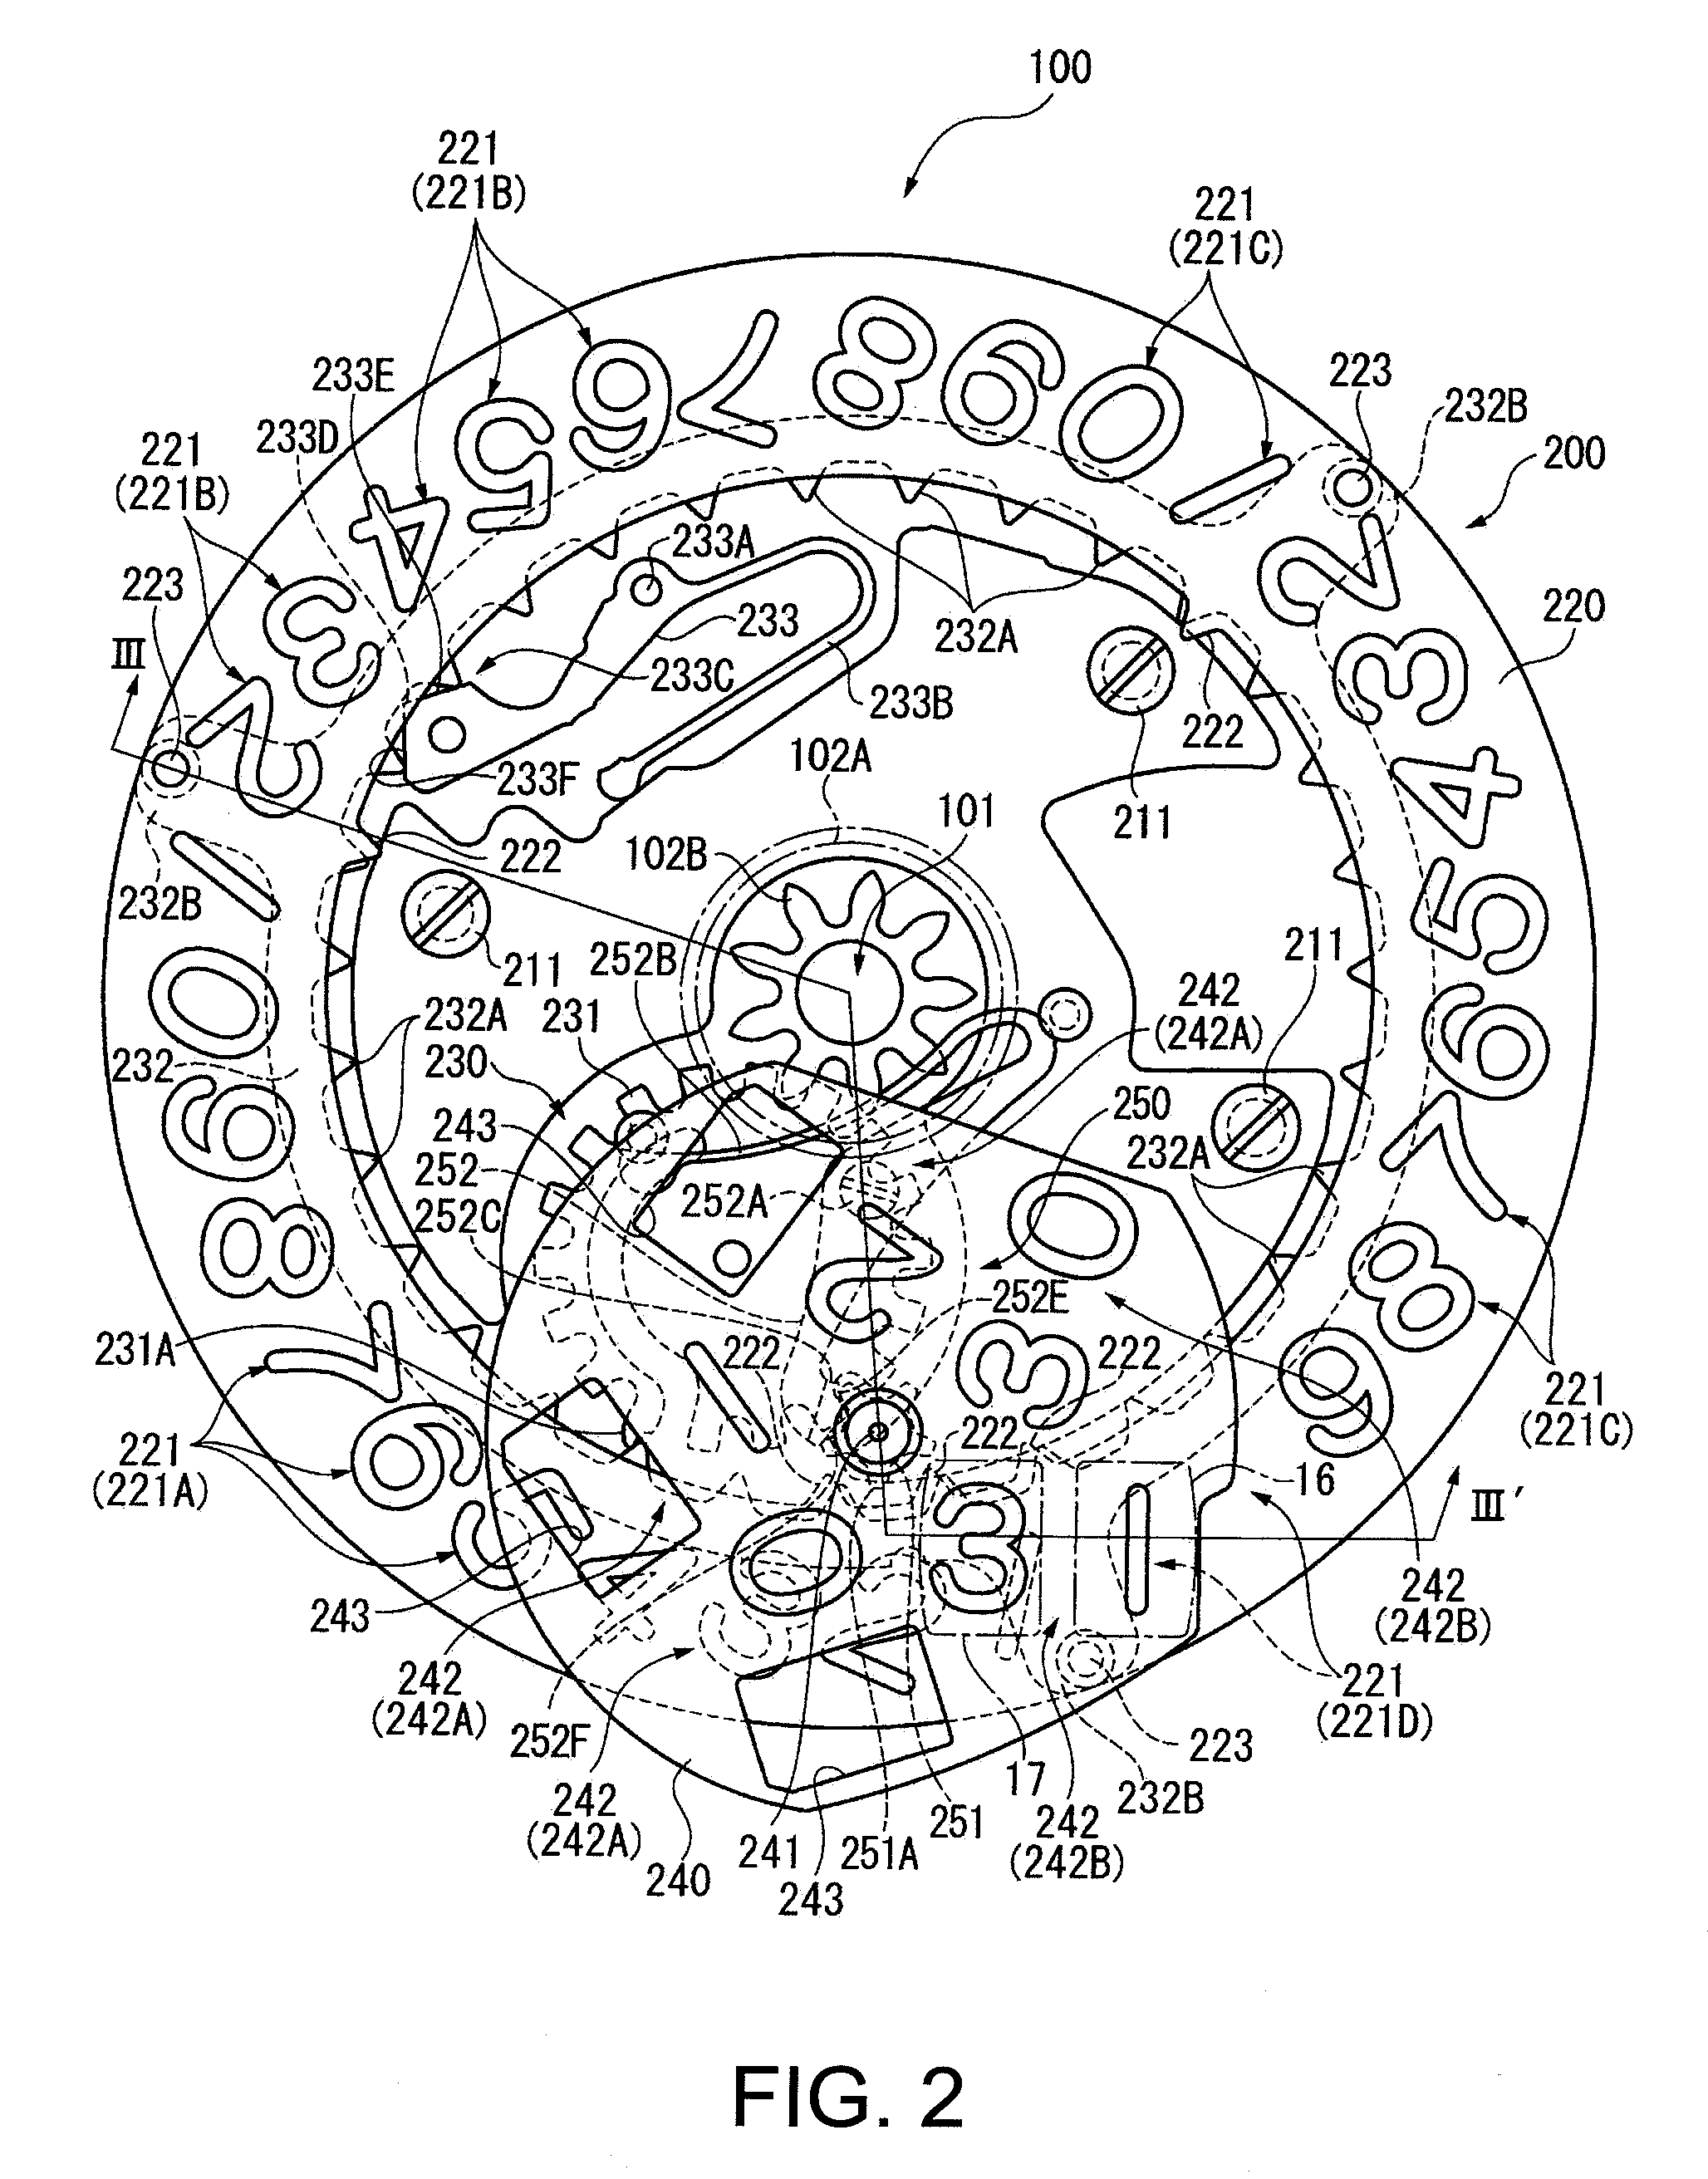 Timepiece with a calendar mechanism